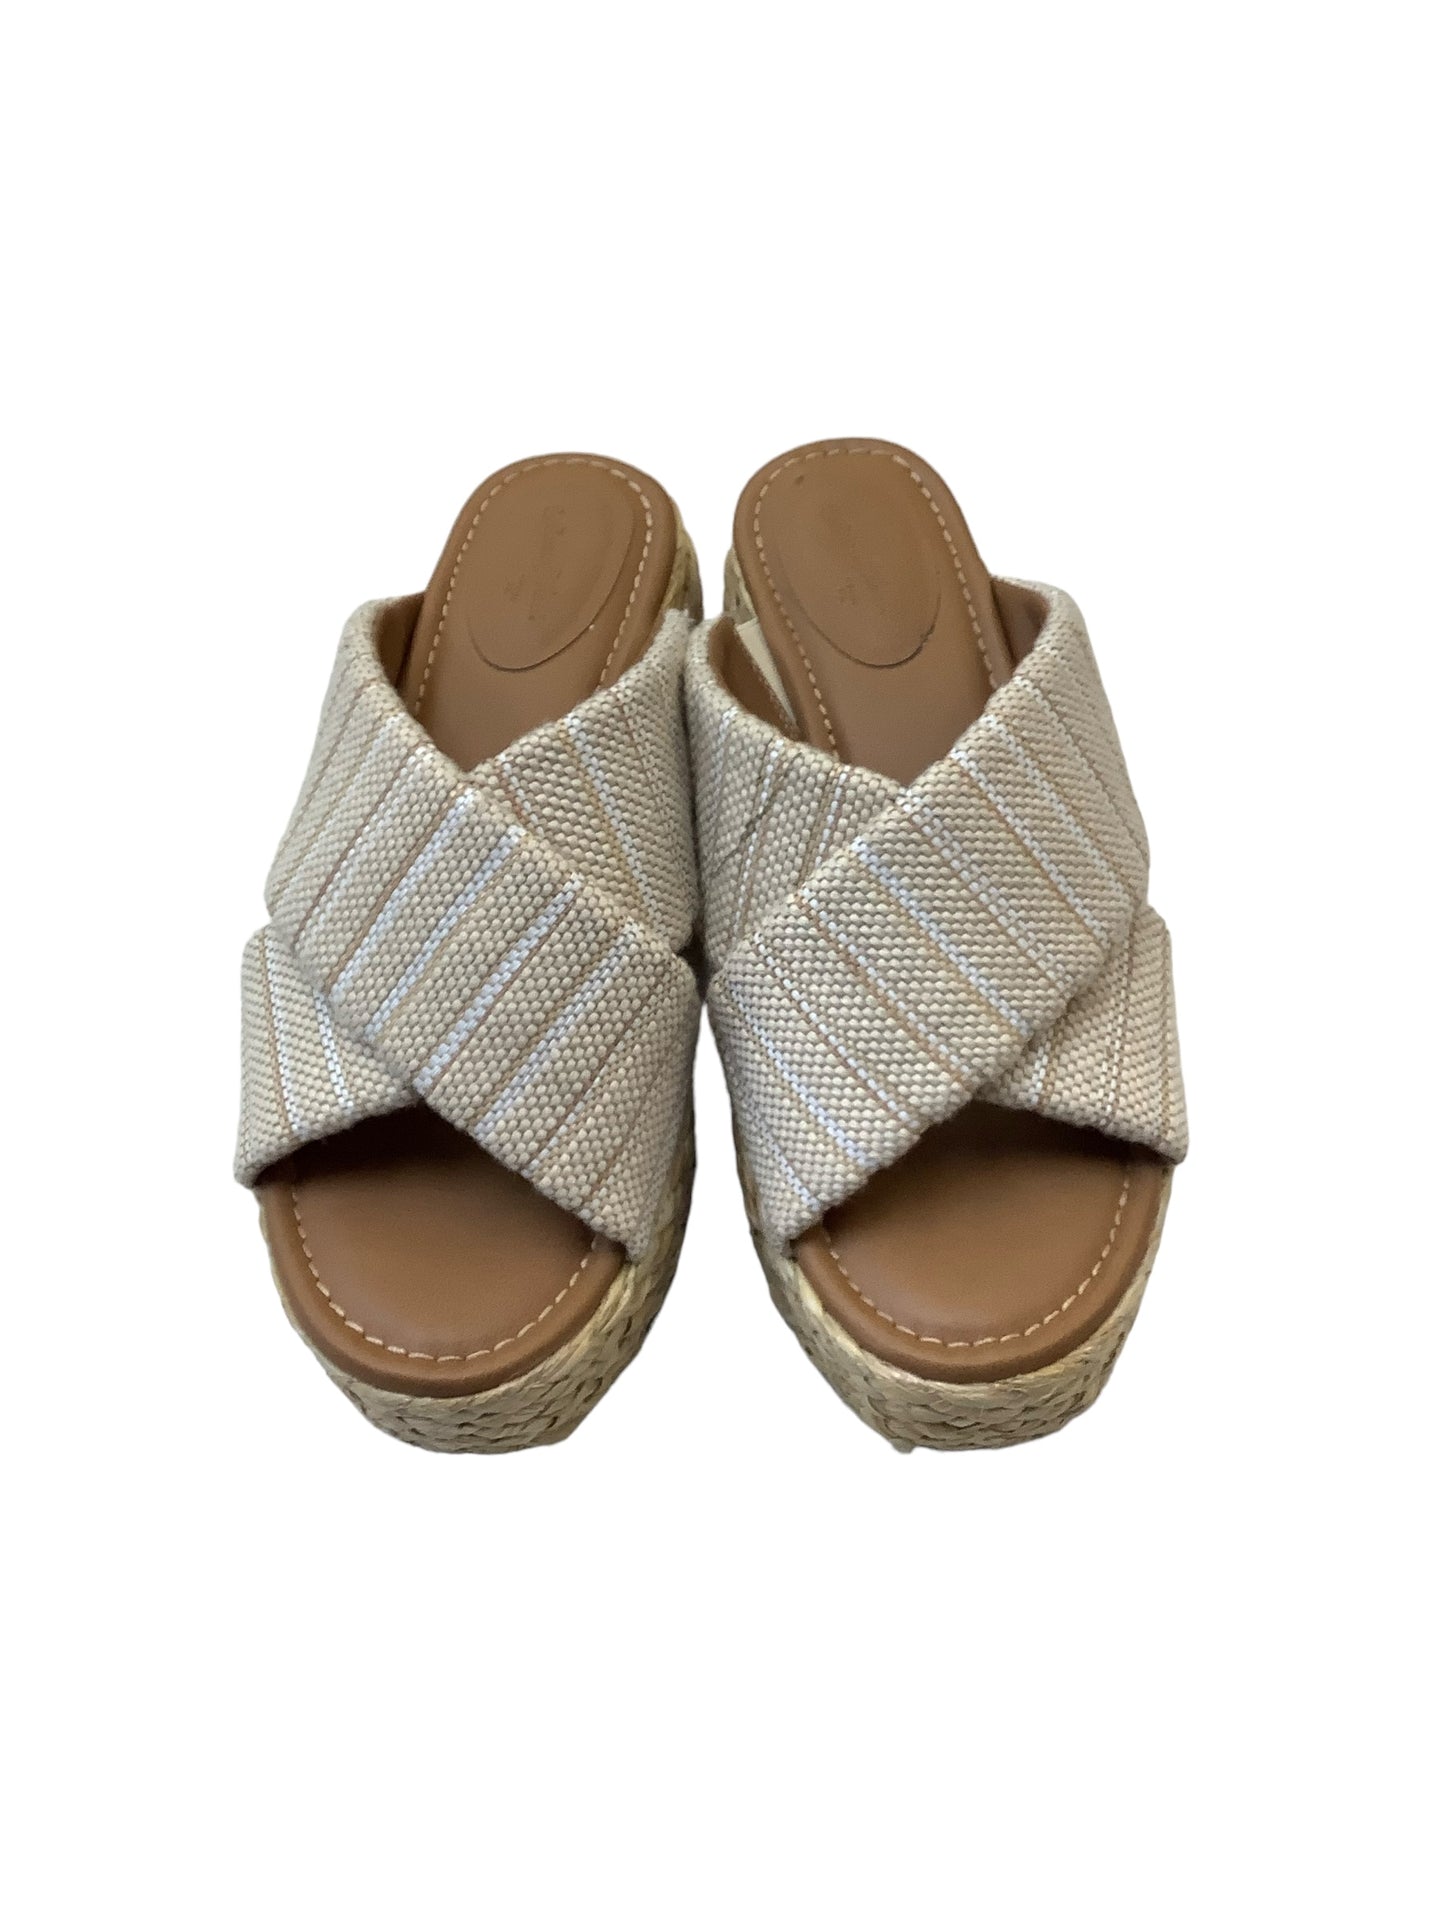 Sandals Heels Platform By Universal Thread  Size: 8.5